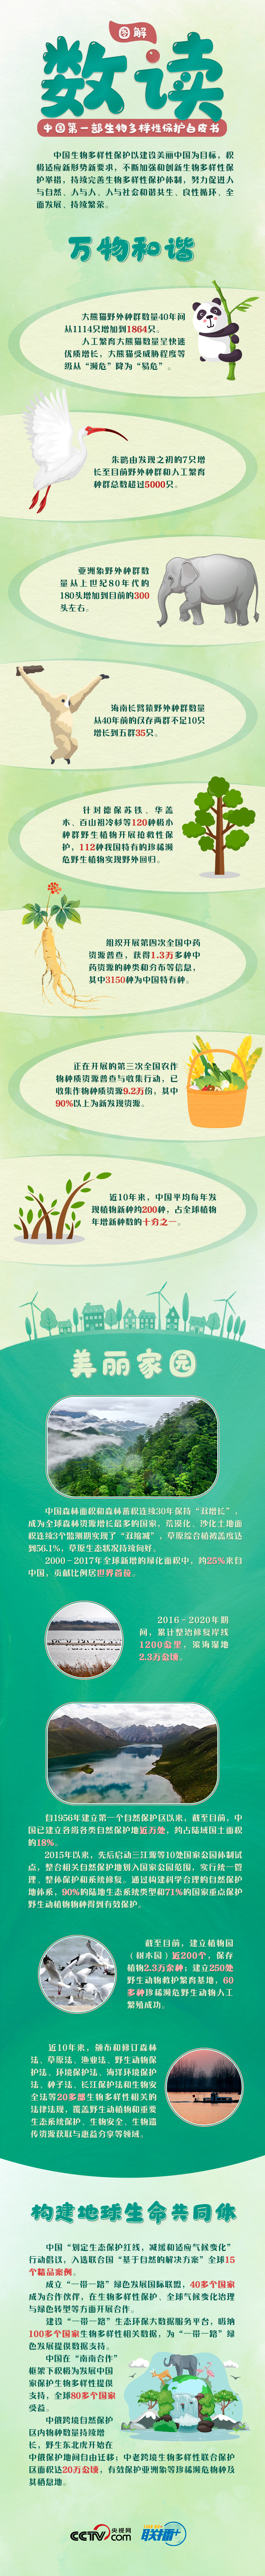 “我们的共同家园|COP15来了！中国首发新领域白皮书惊喜多看点足